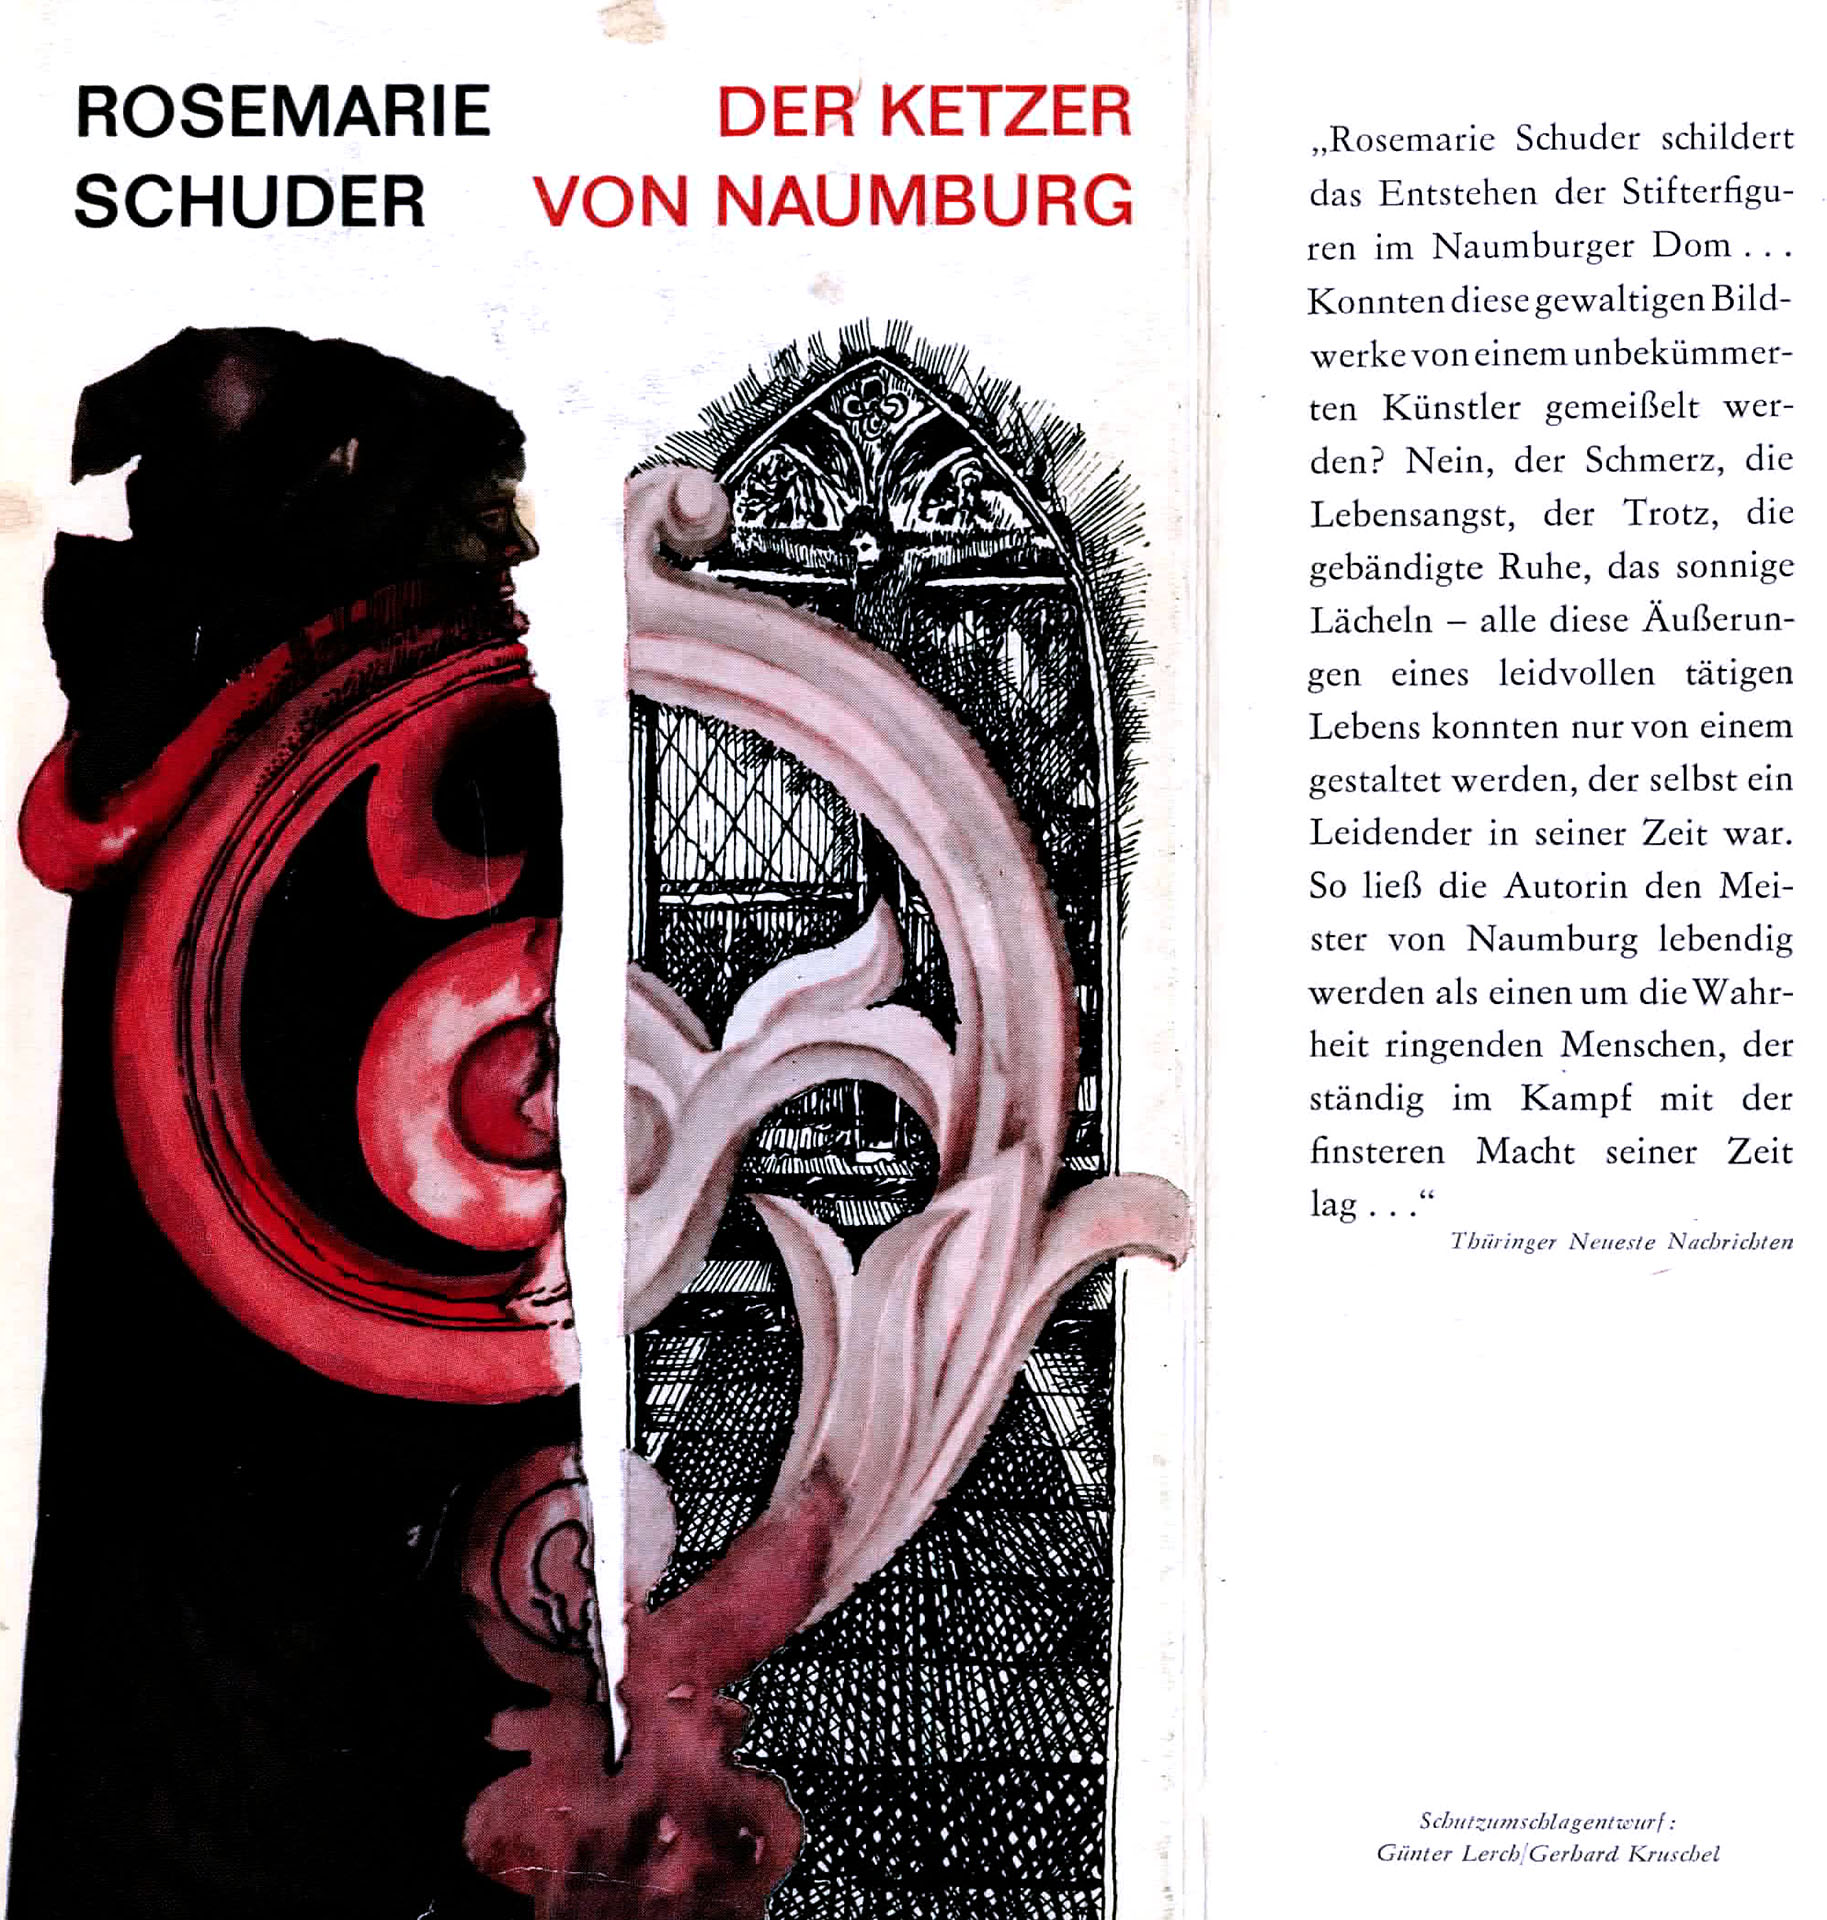 Der Ketzer von Naumburg - Schuder, Rosemarie